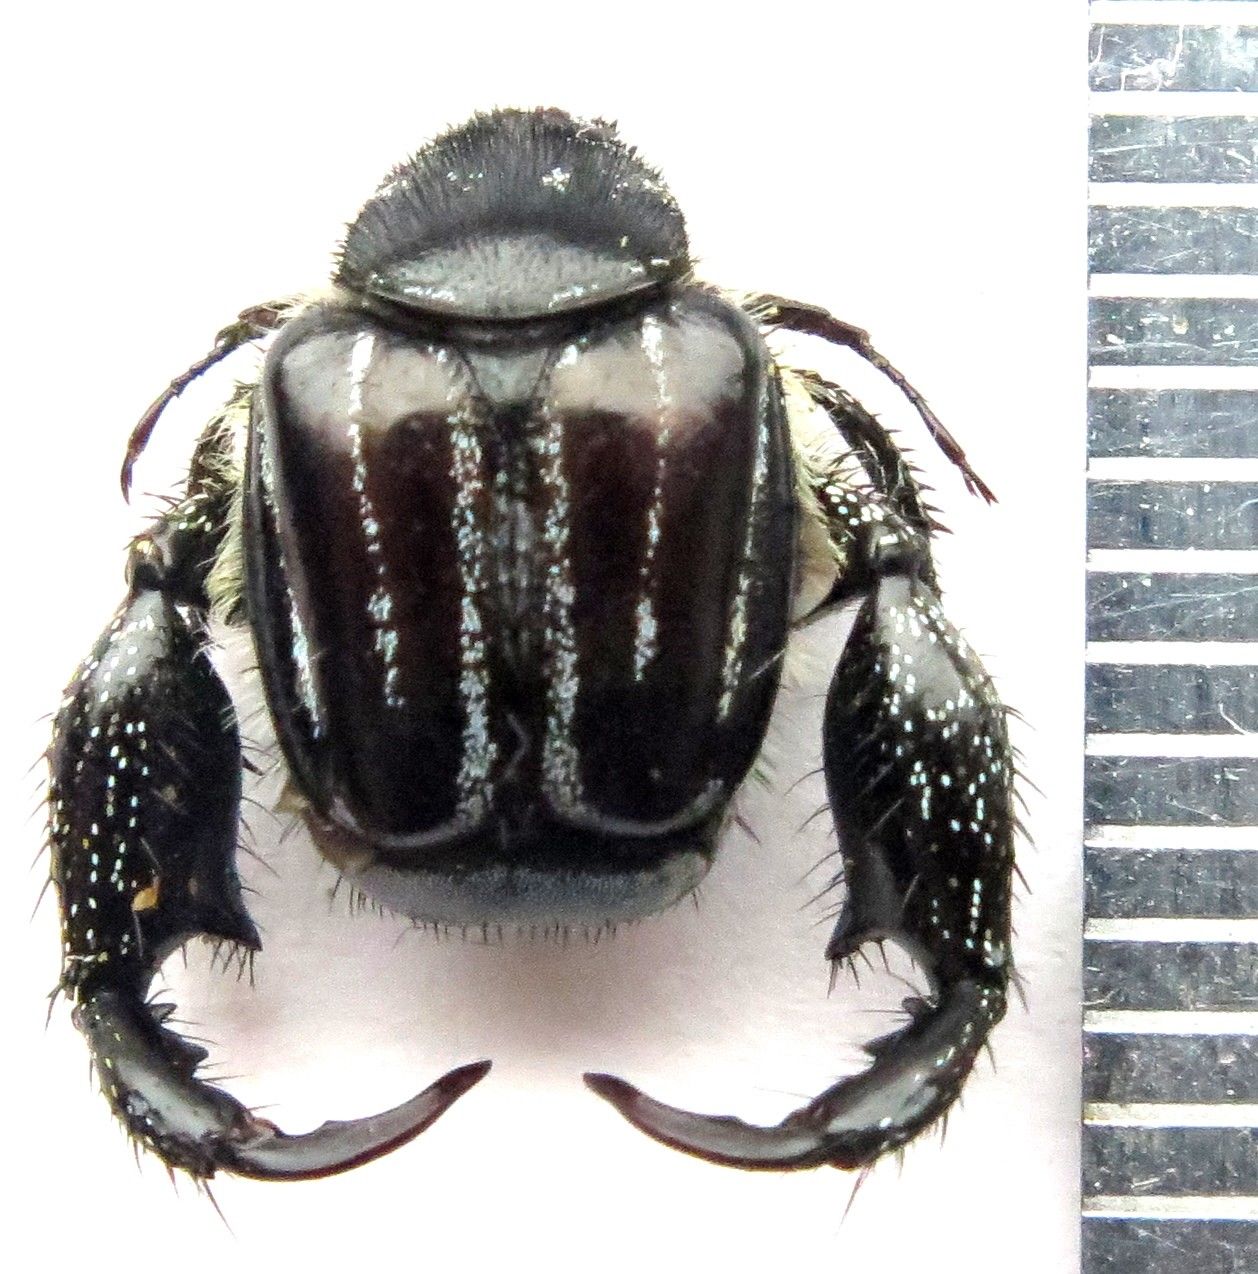 Weird Beetle dorsal.jpg